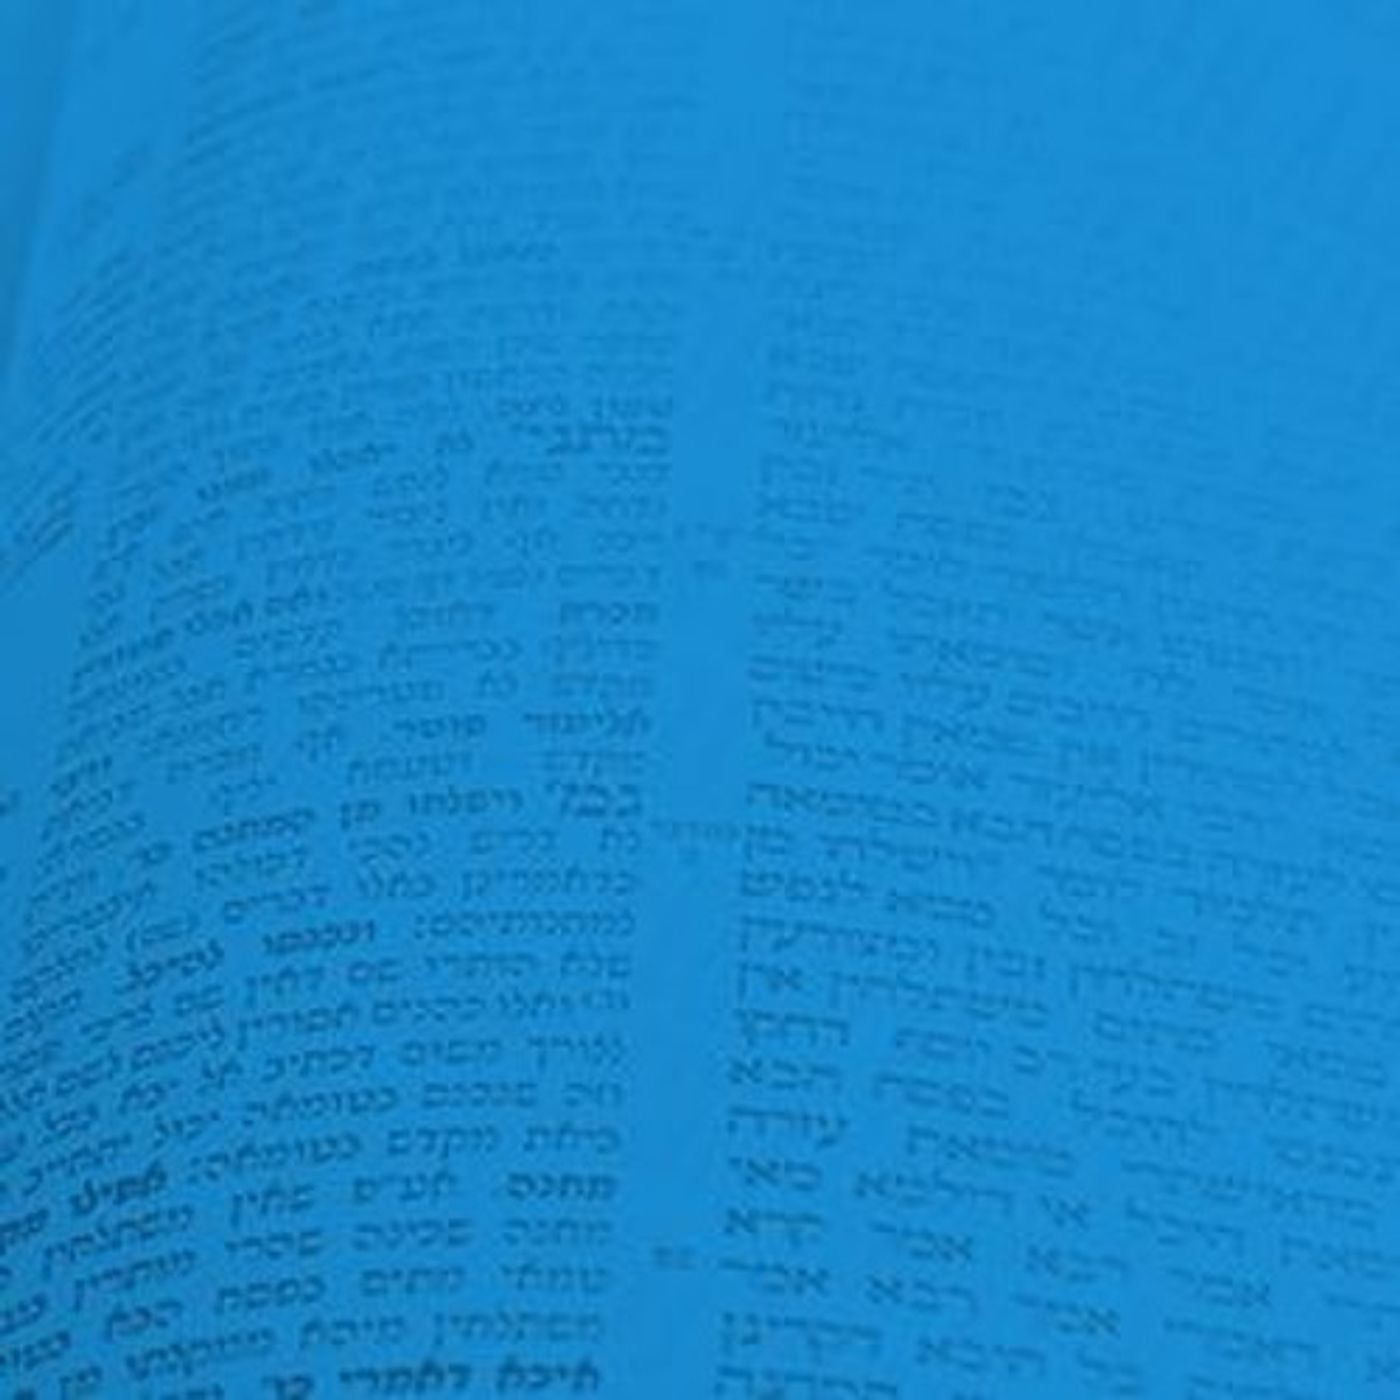 Talmud Conclusion